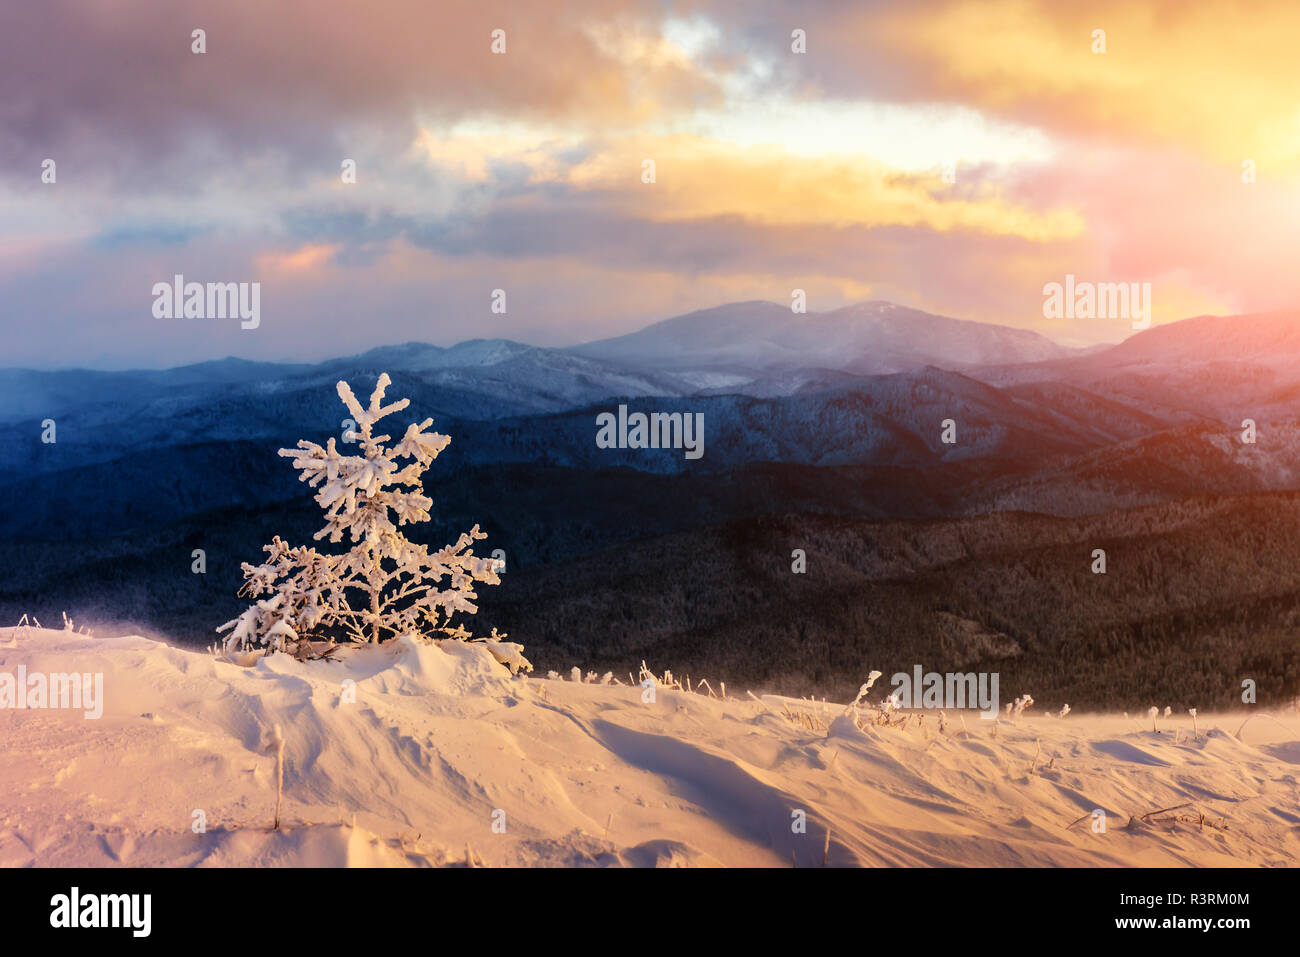 Fantastische orange Winterlandschaft in Snowy Mountains glühende durch Sonnenlicht. Dramatische winterliche Szene mit verschneiten Bäumen. Weihnachten Konzept. Stockfoto